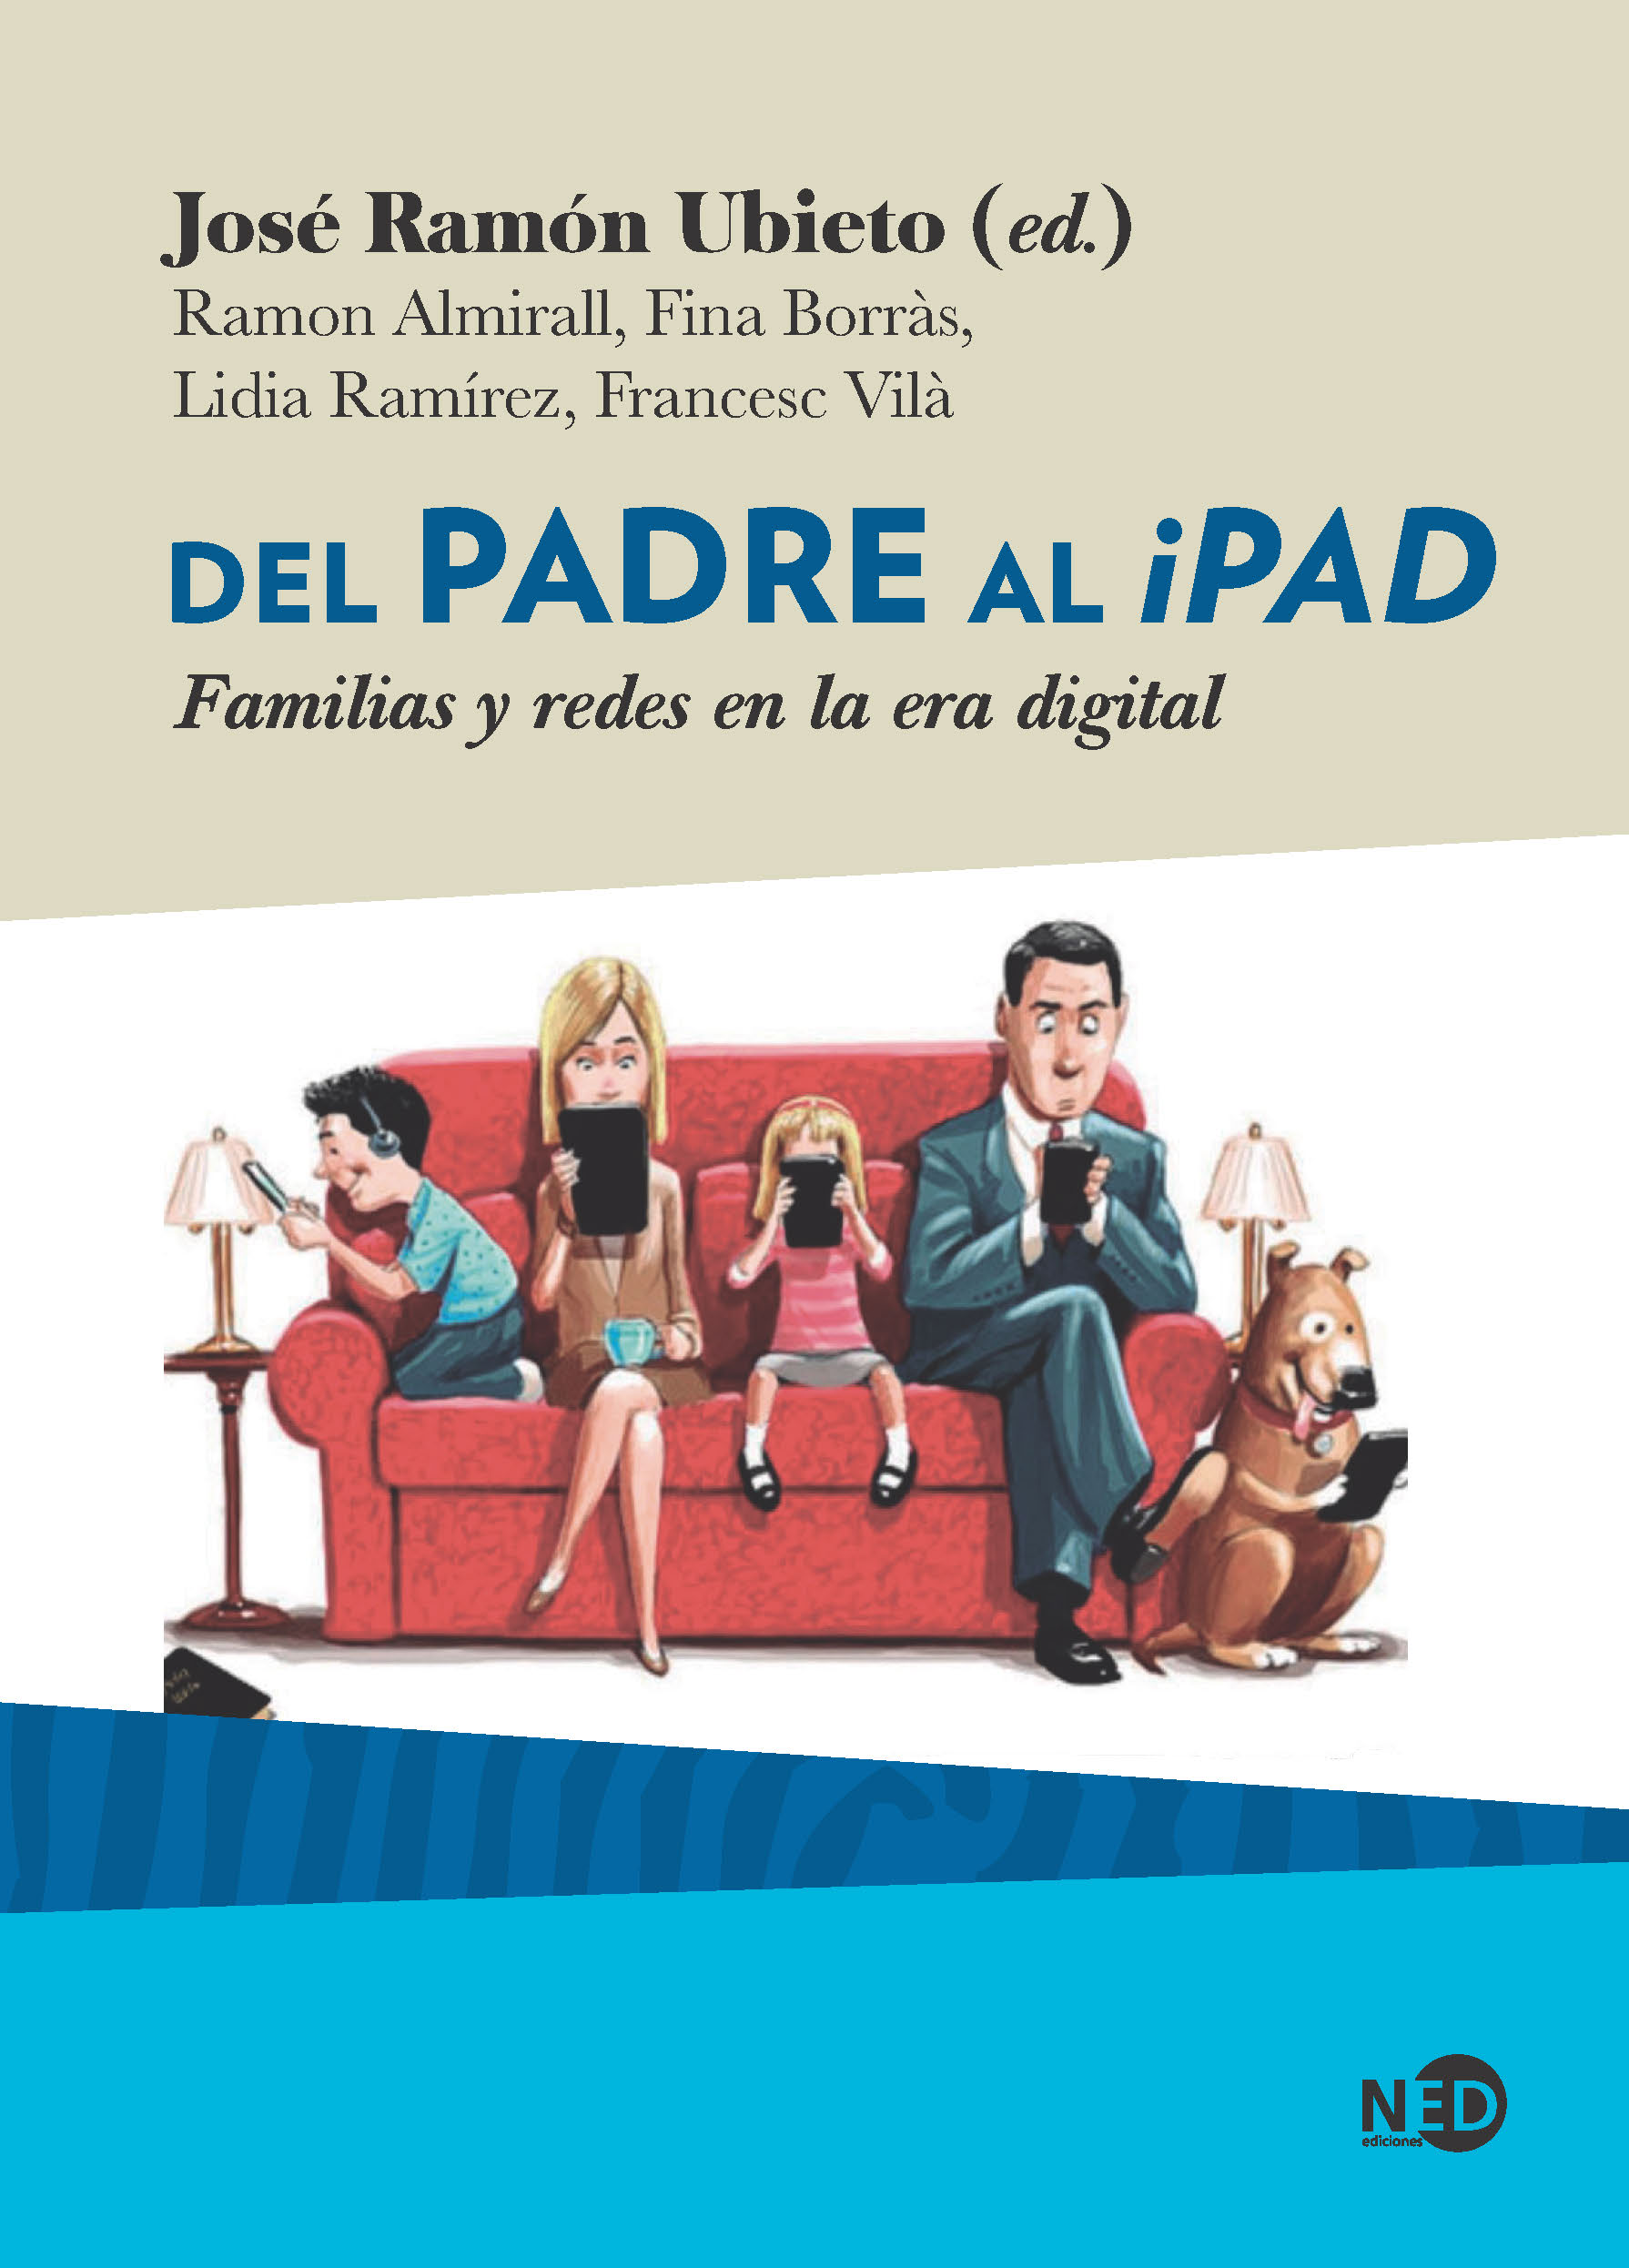 Llibre: Del padre al iPad. Familias y redes en la era digital